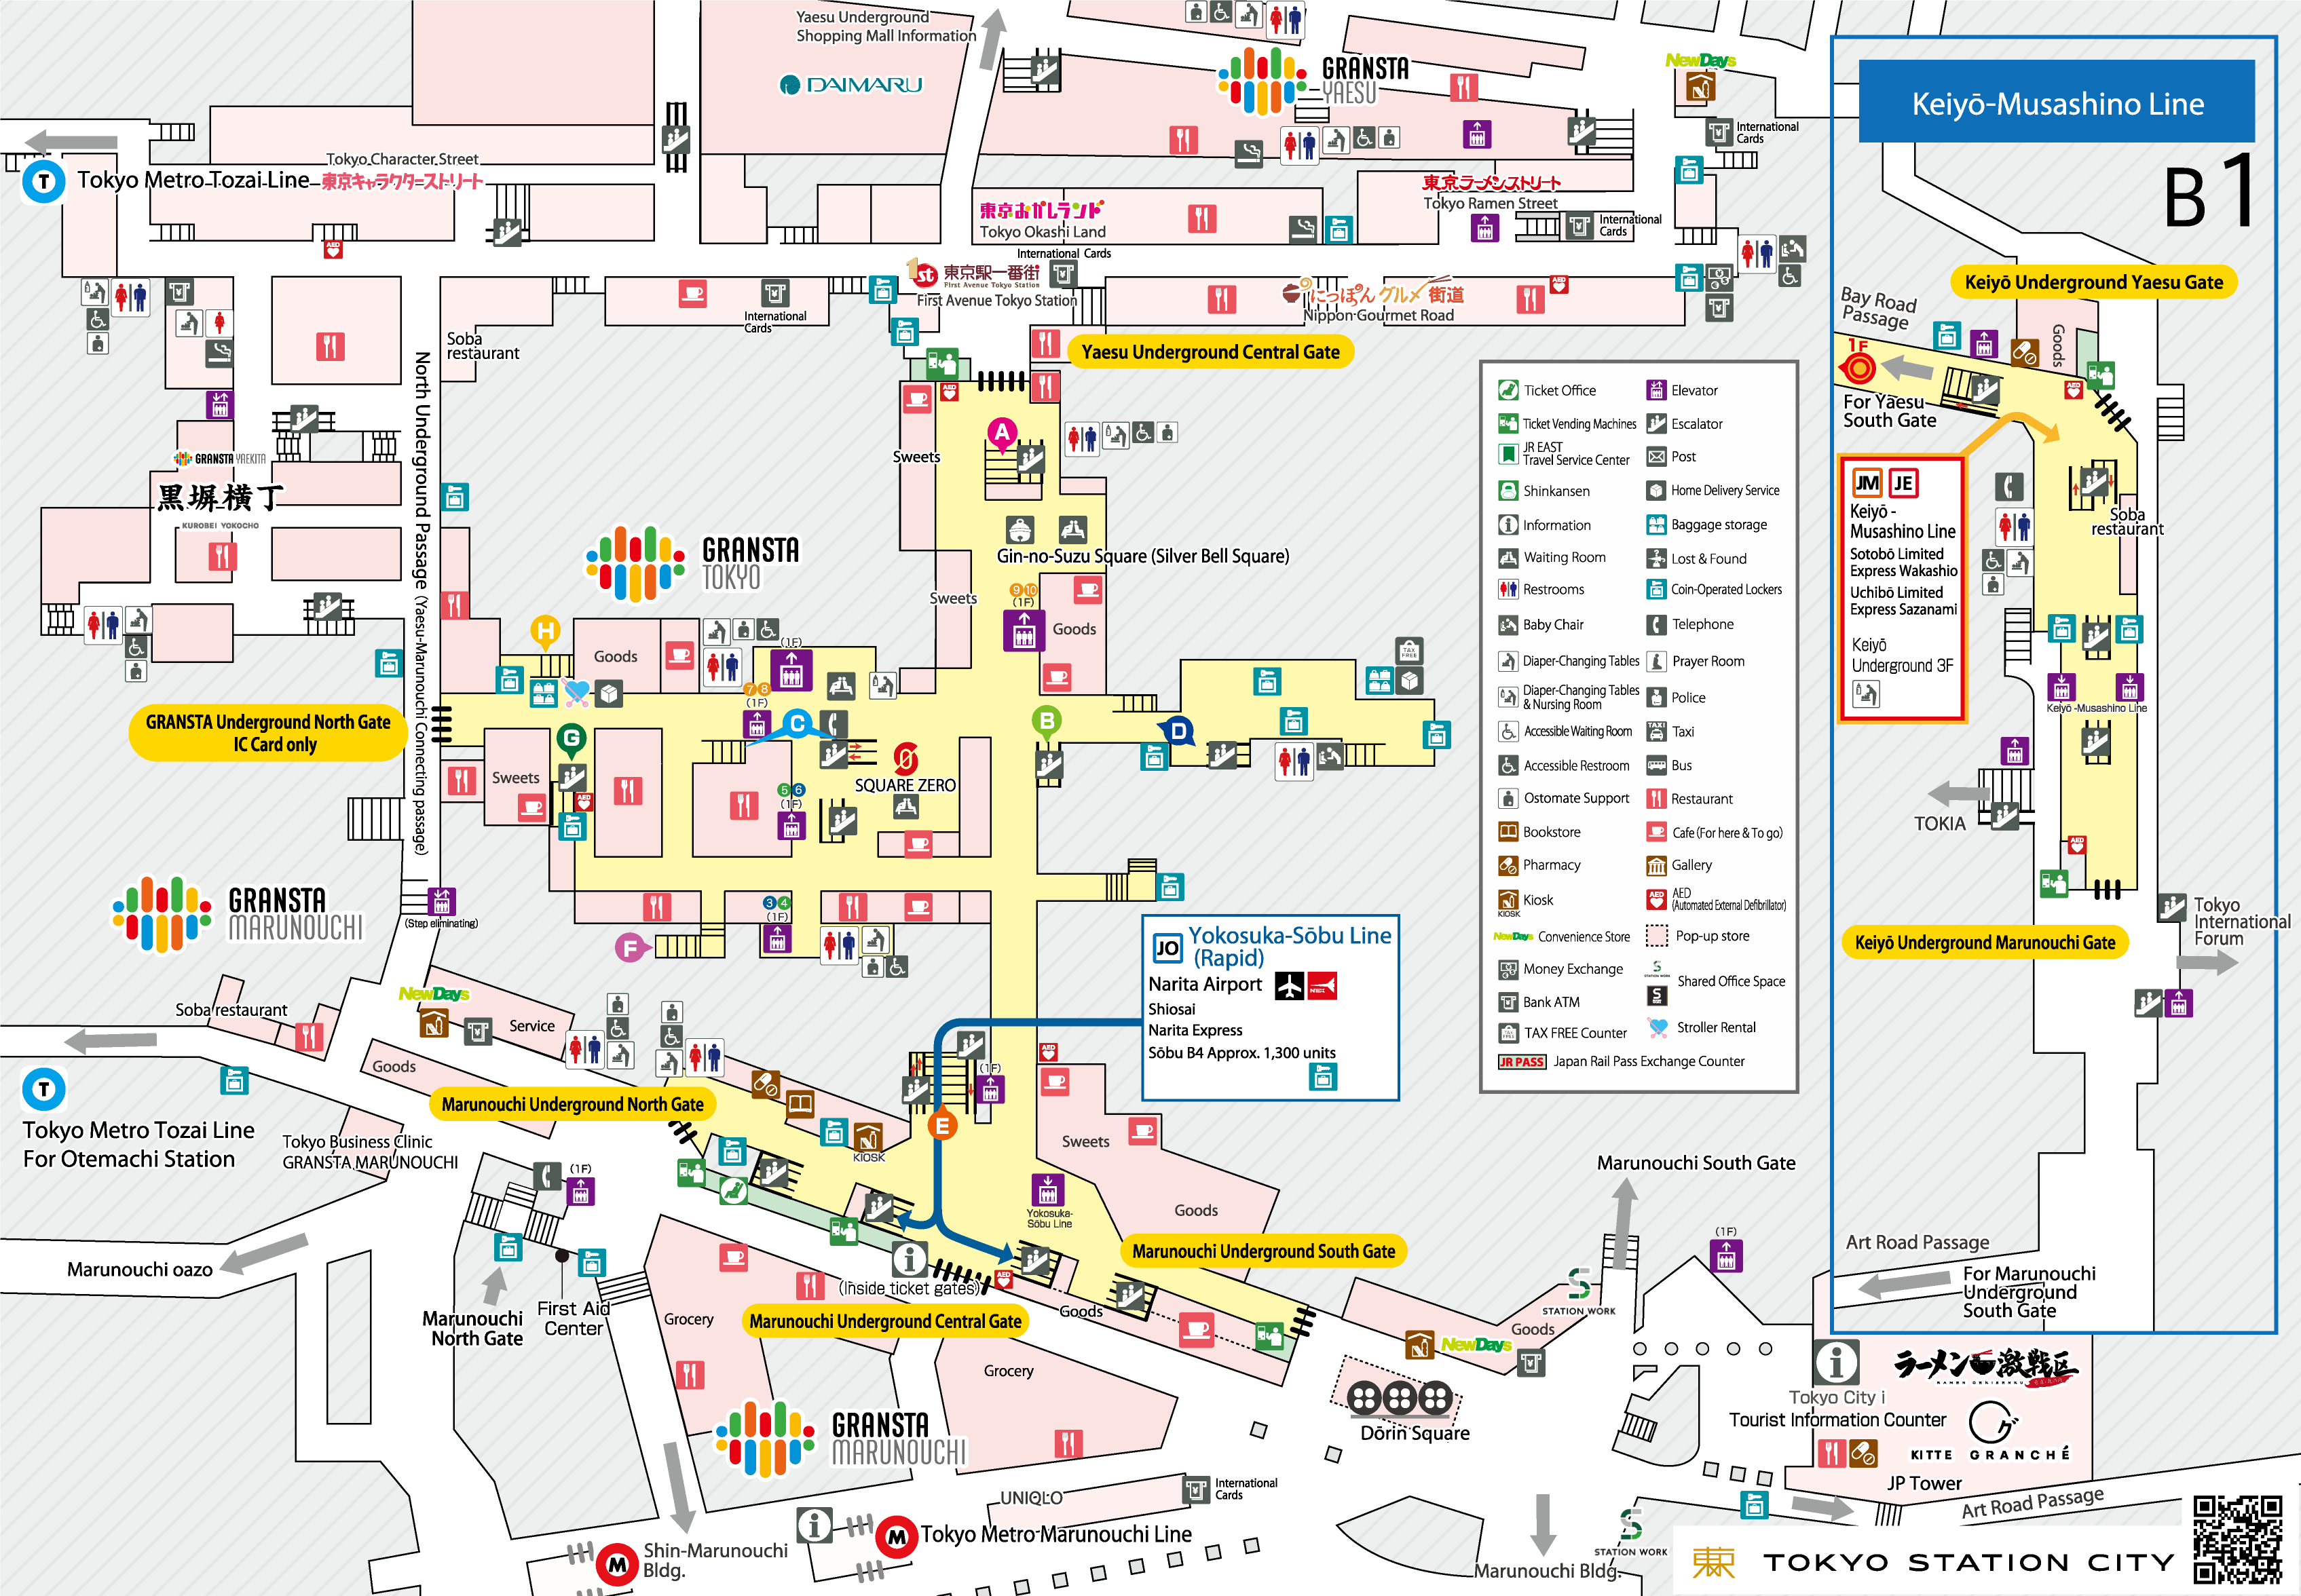 http://www.tokyostationcity.com/en/information/images/stationyard_map_b1.png